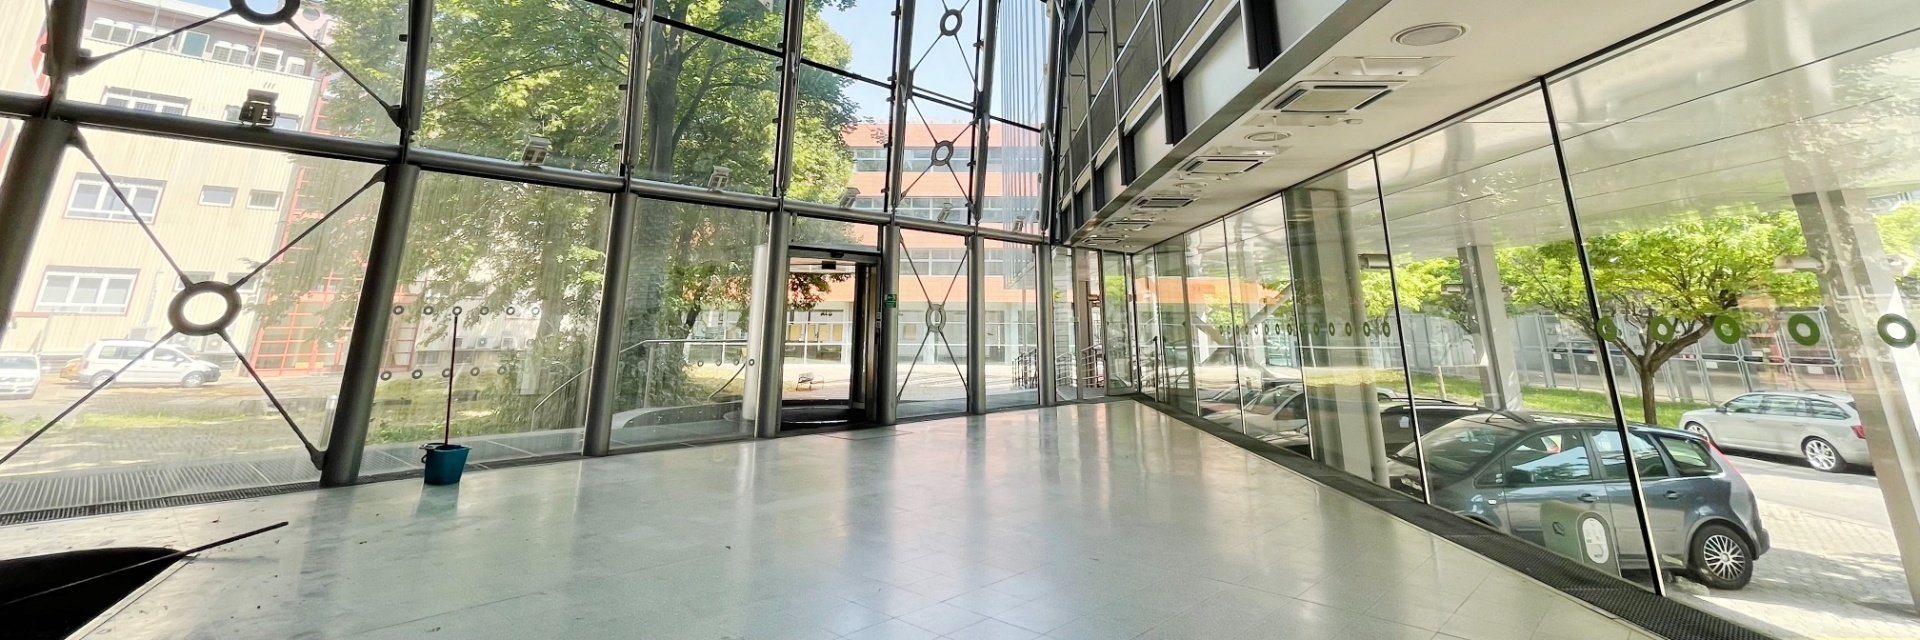 Pronájem kancelářských prostor 178 m² ve 4.NP, ulice Plynárenská, Brno